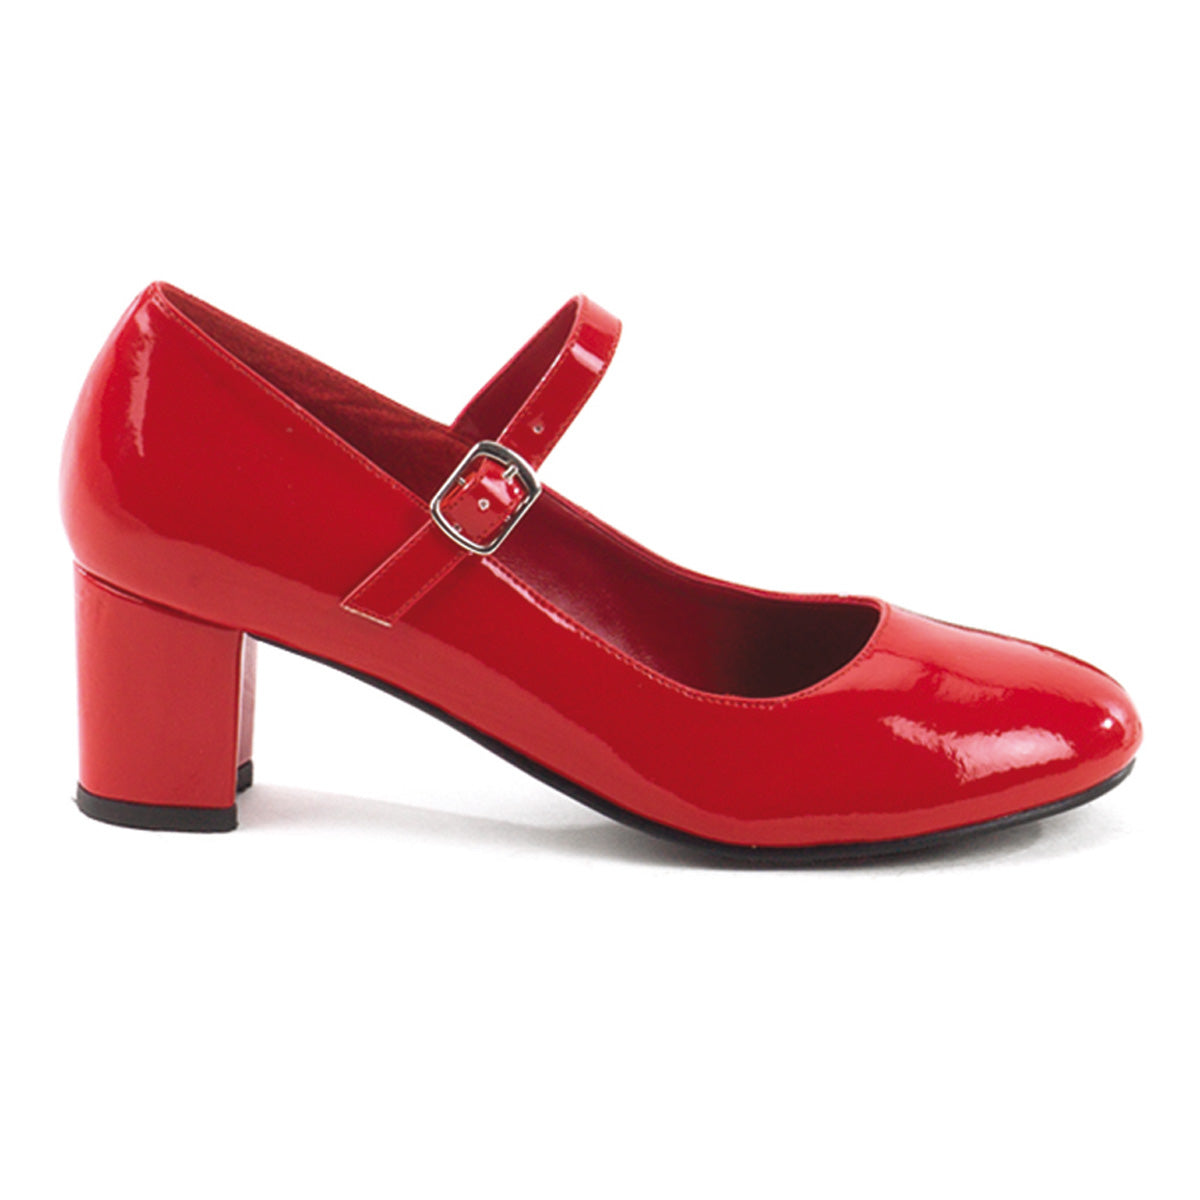 SCHOOLGIRL-50 Pleasers Funtasma 2 Inch Heel Red Women's Sexy Shoes